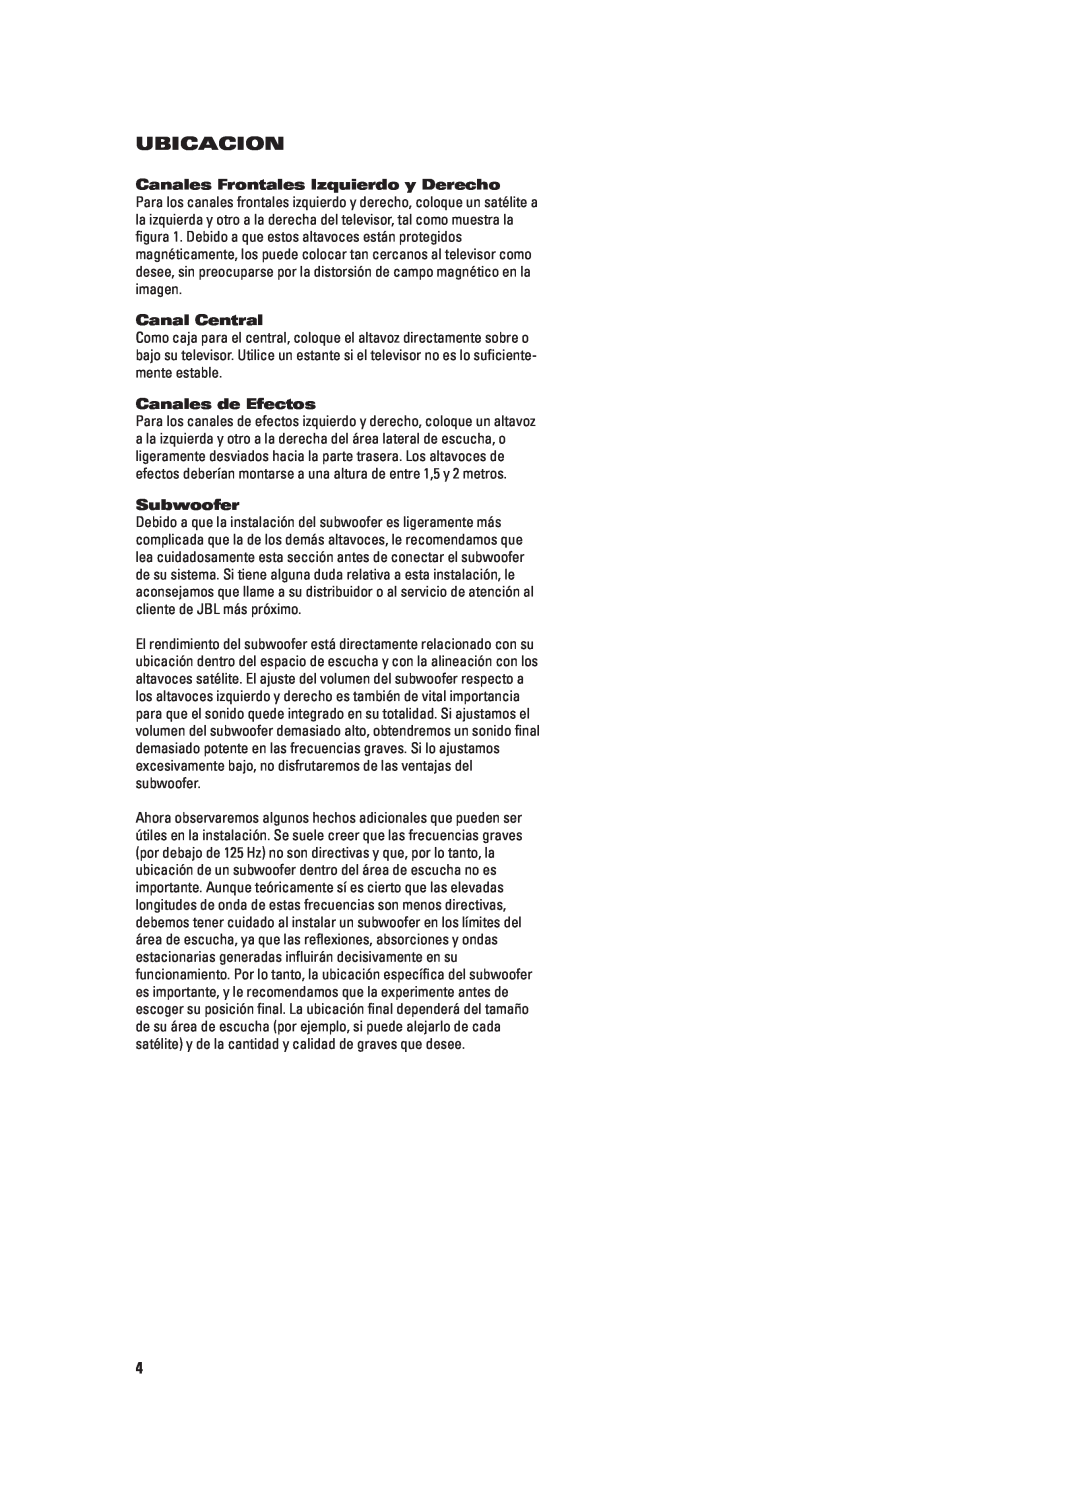 JBL CS460 (230V) manual Ubicacion, Canales Frontales Izquierdo y Derecho, Canal Central, Canales de Efectos, Subwoofer 